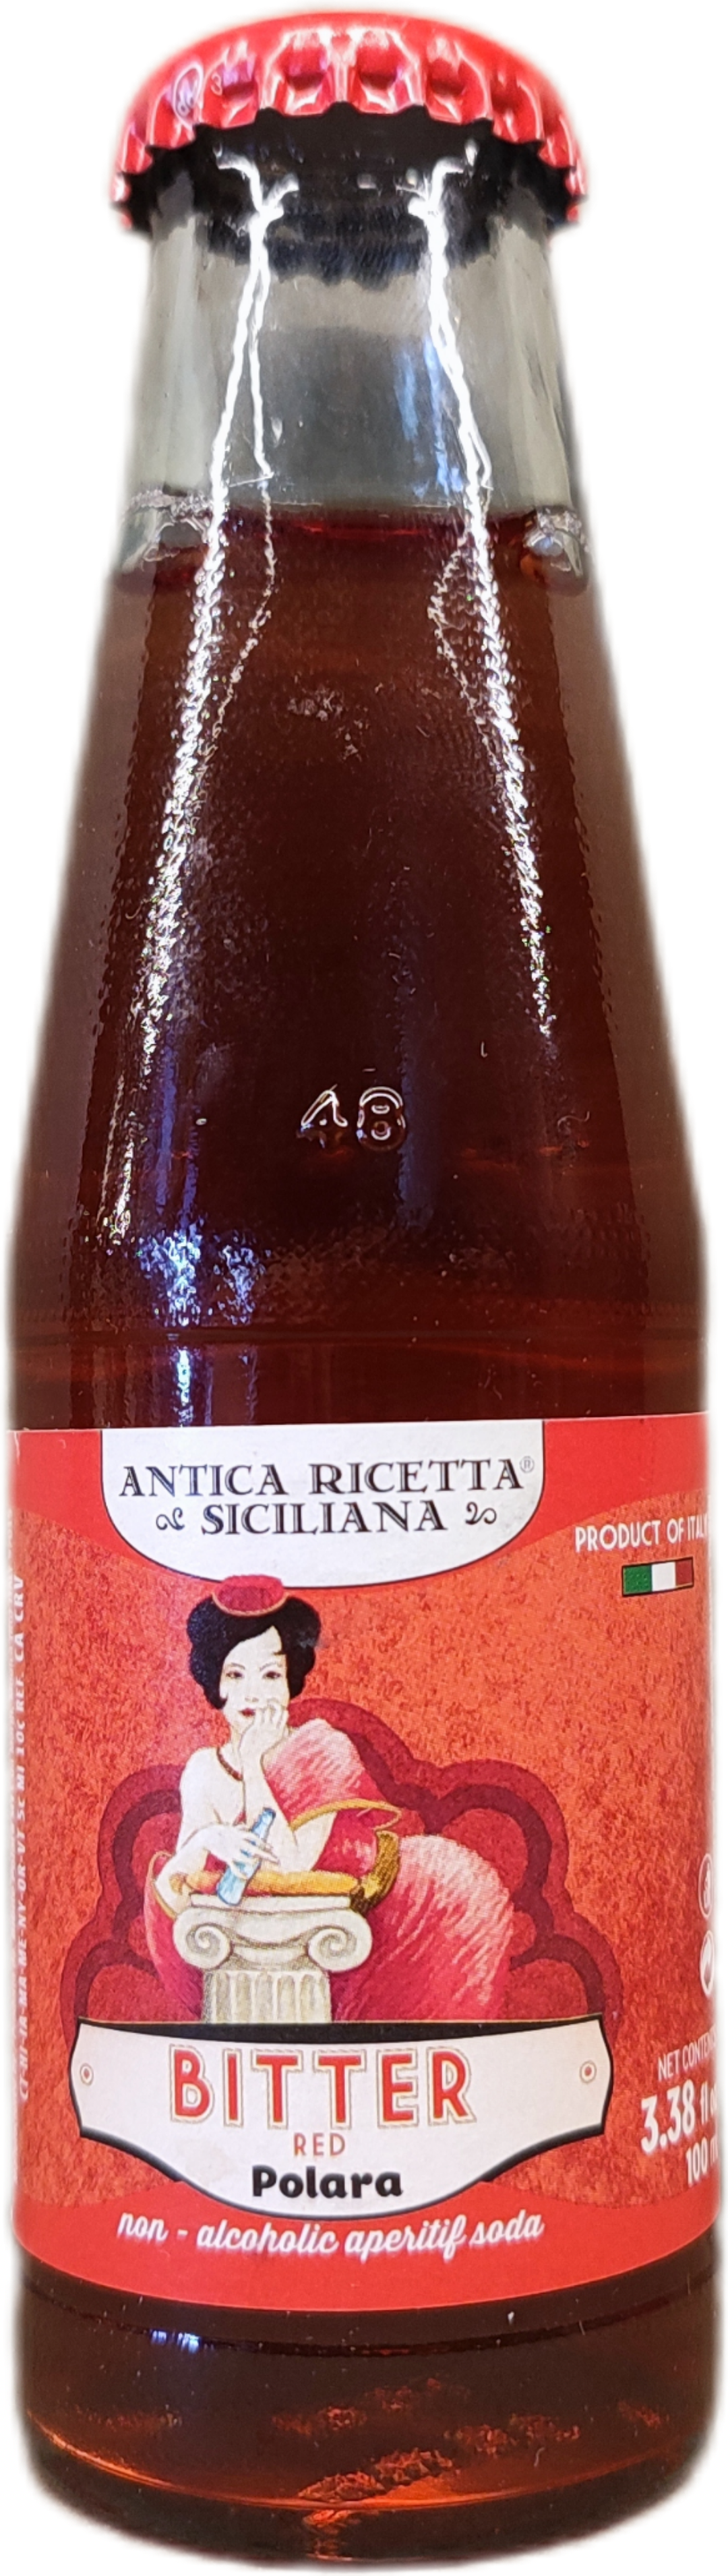 Polara Red Bitter - Aperitif Soda Donato Store